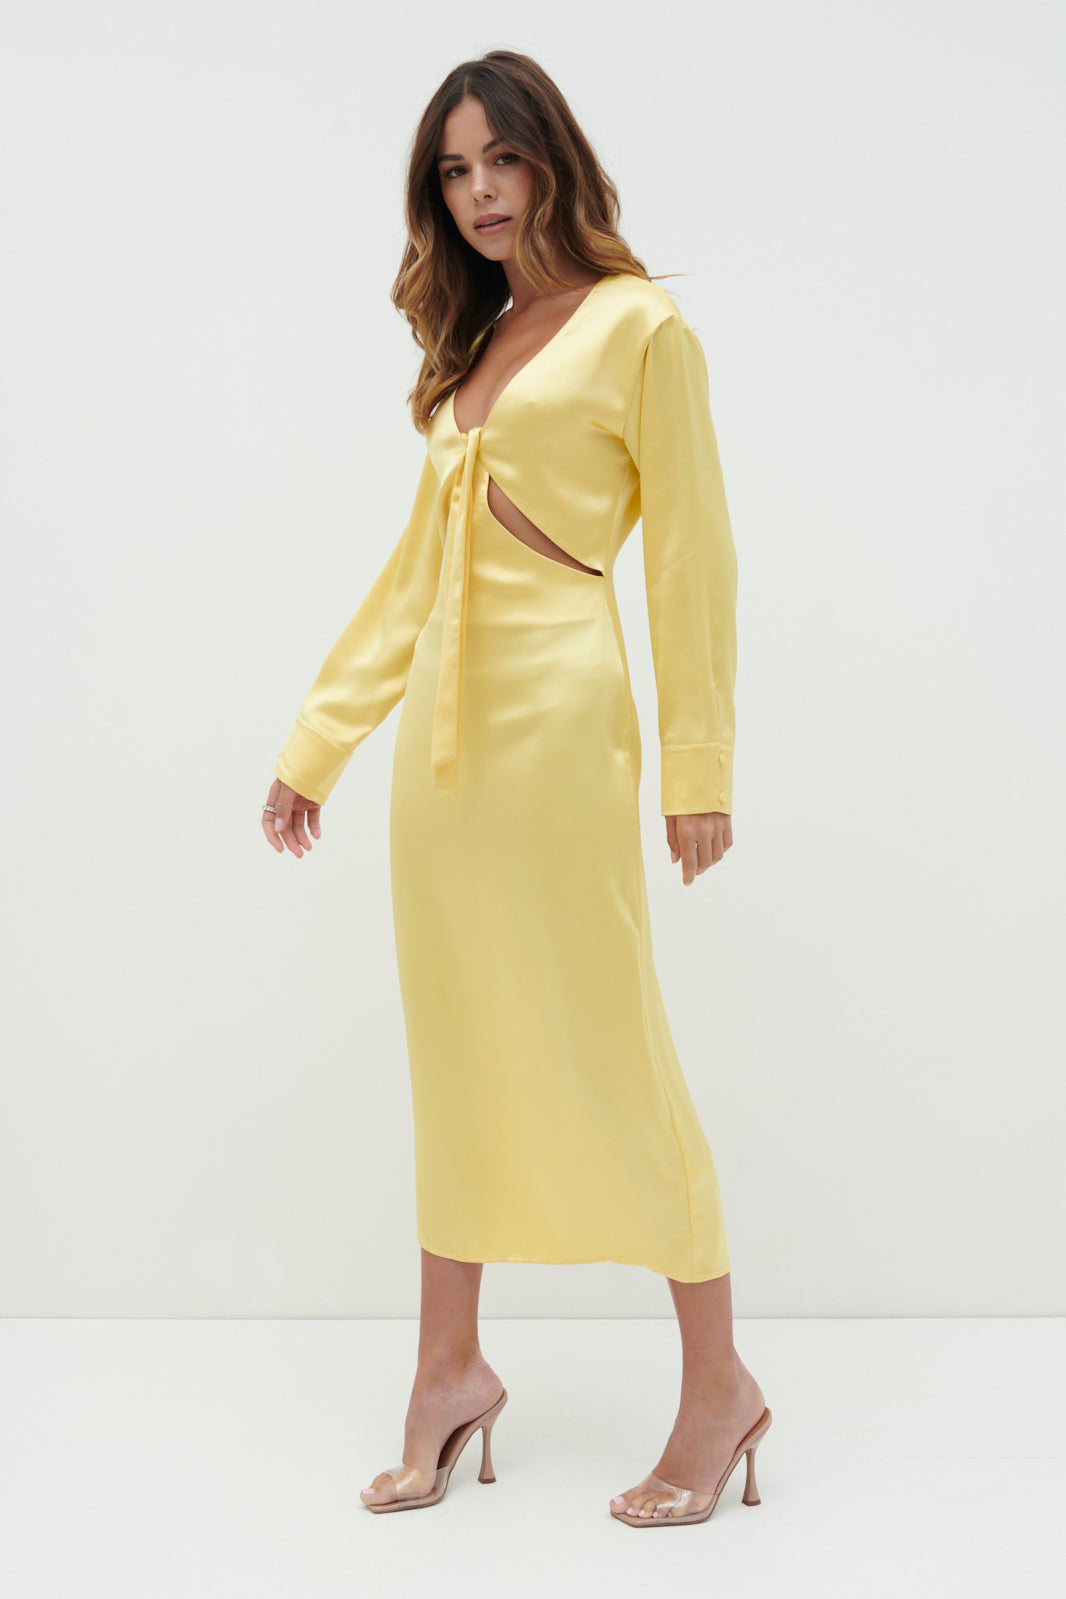 Rosslyn Tied Long Sleeve Midaxi Dress - Lemon, 8